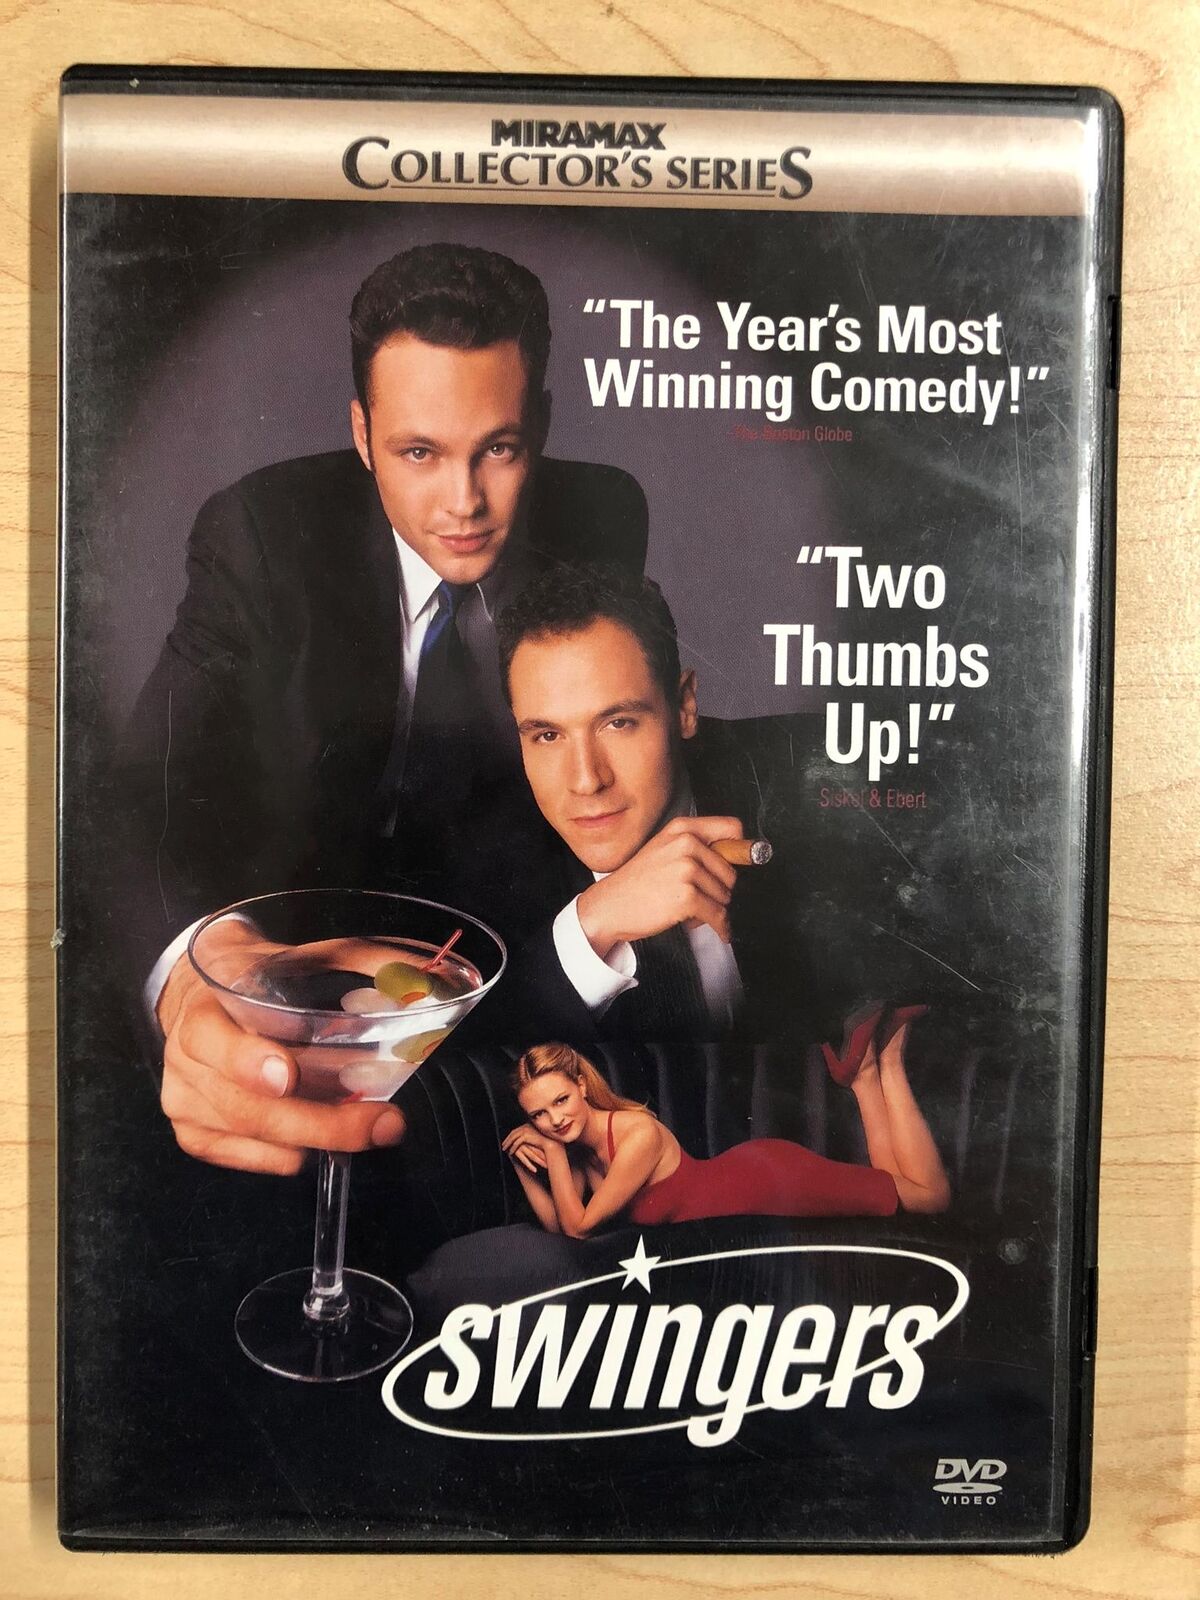 Swingers (DVD, 1996) - J1231